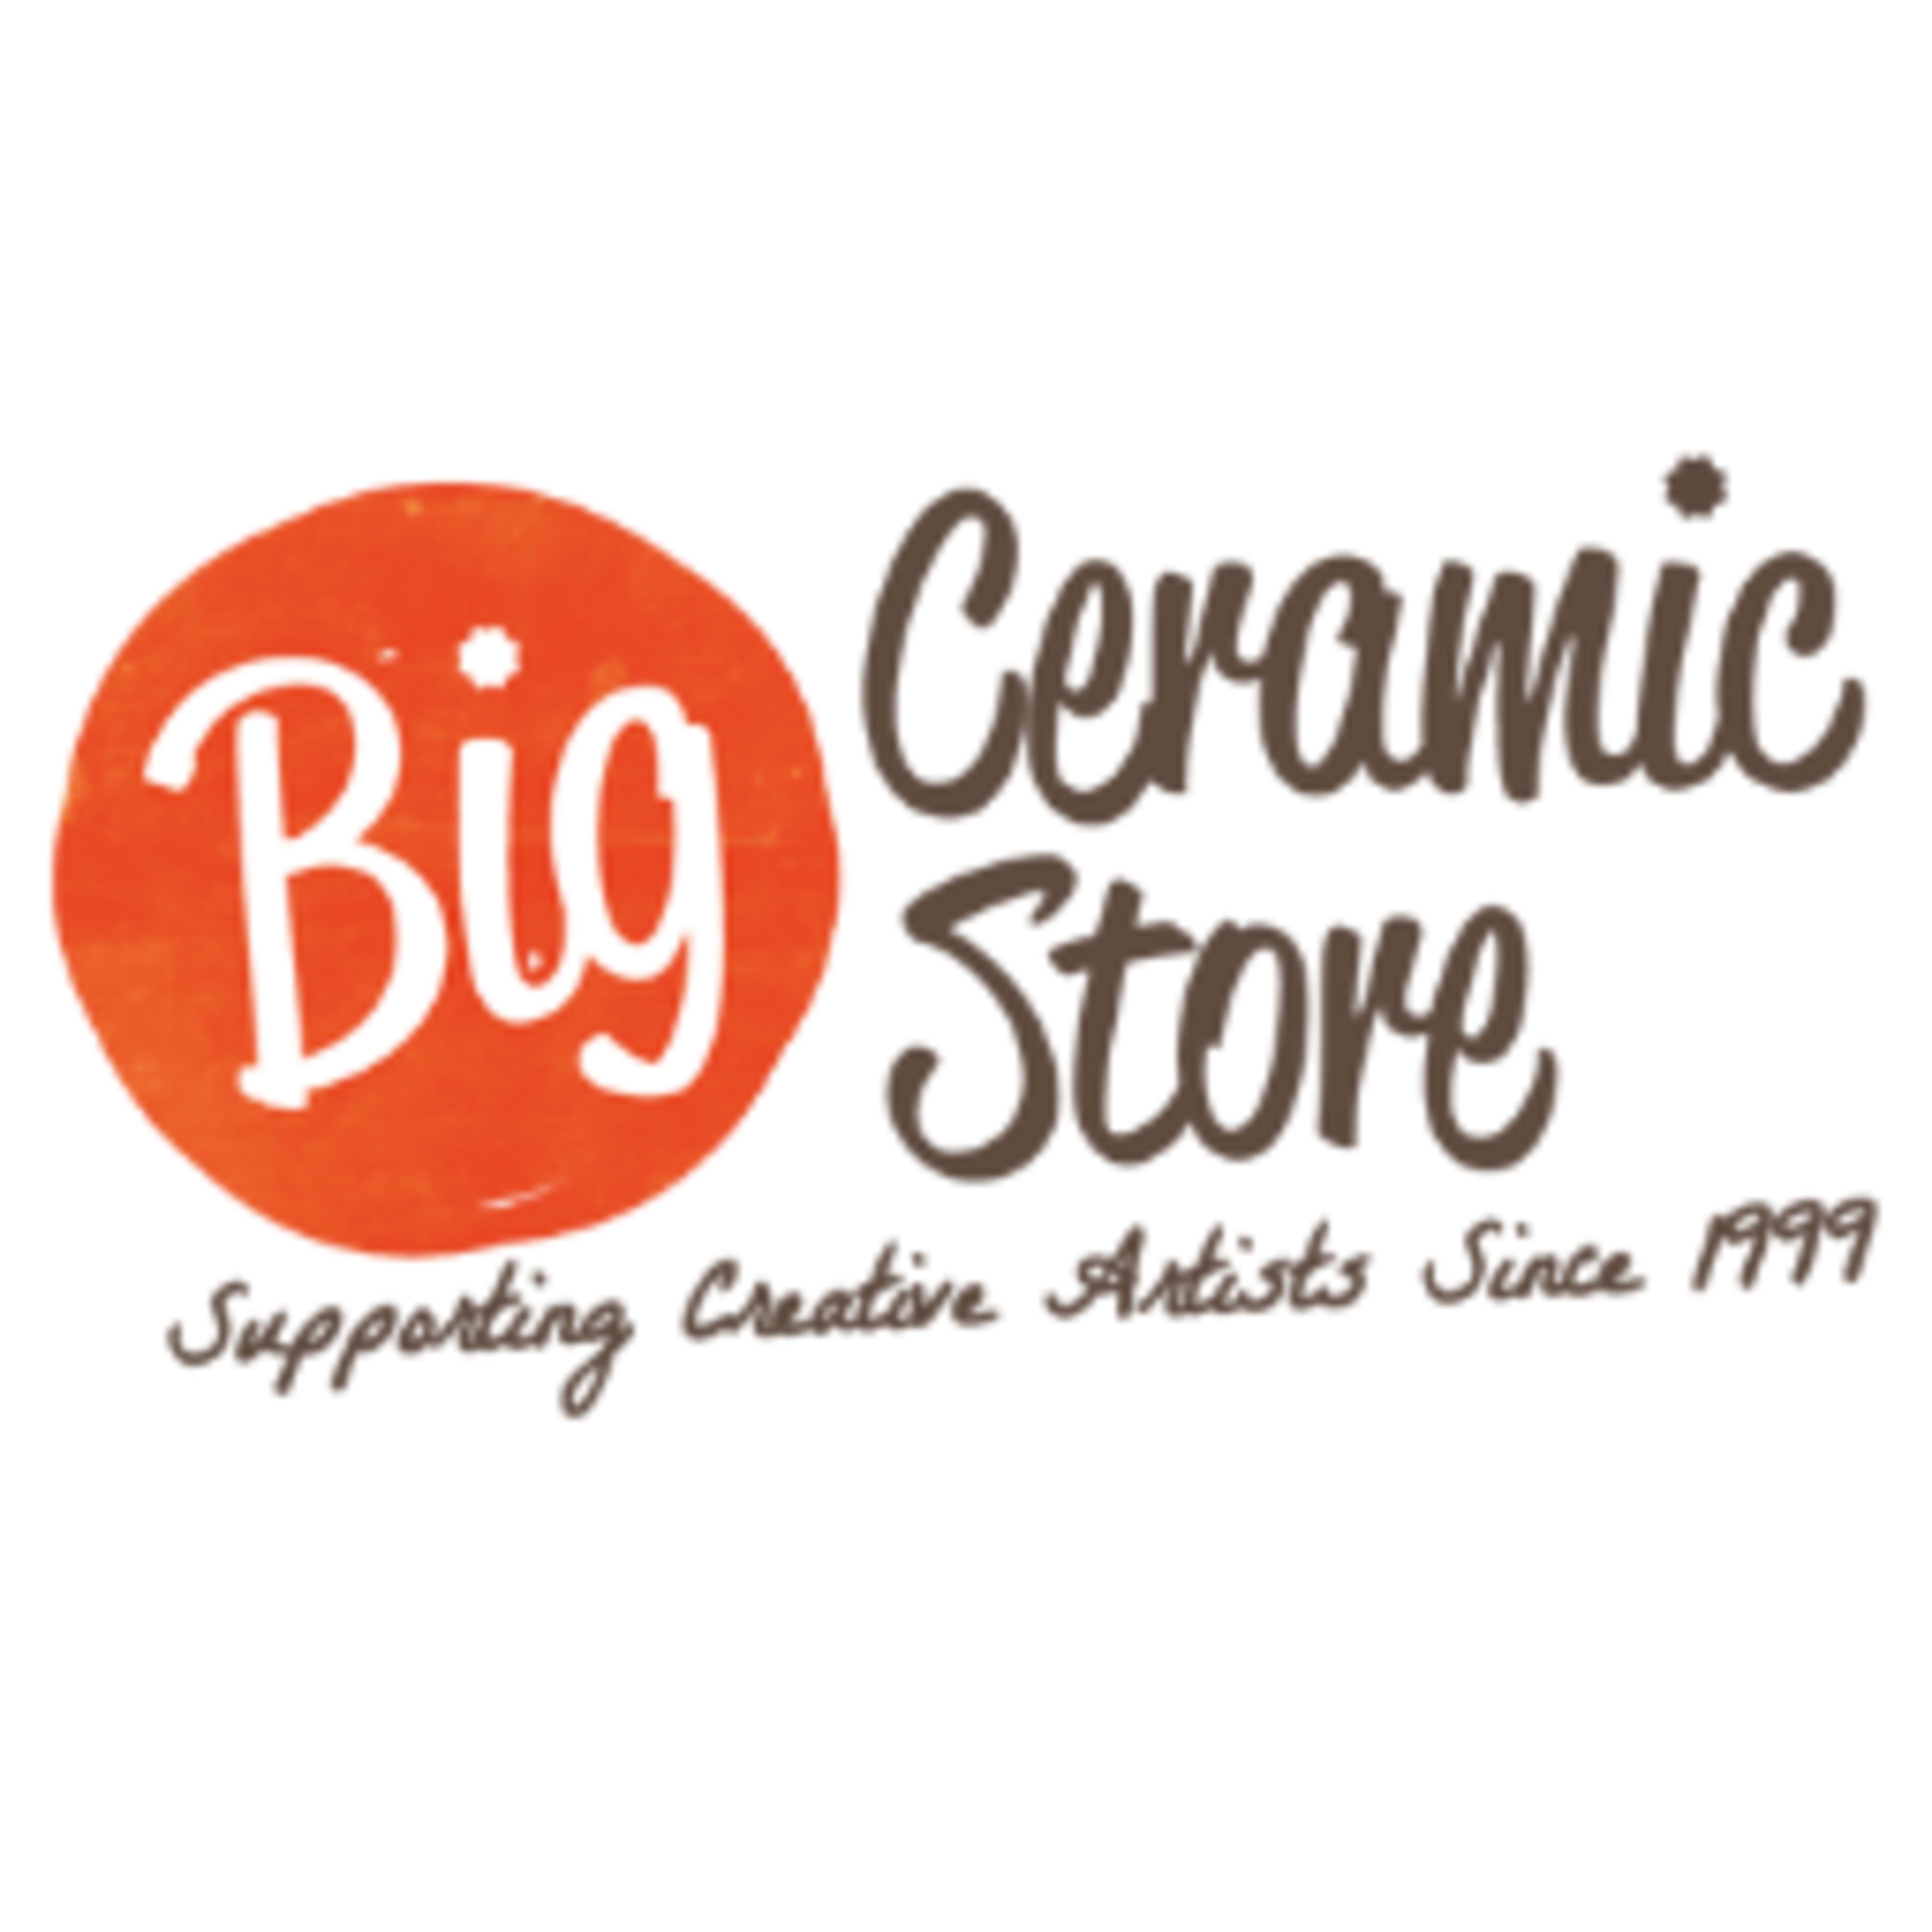 Big Ceramic StoreCode